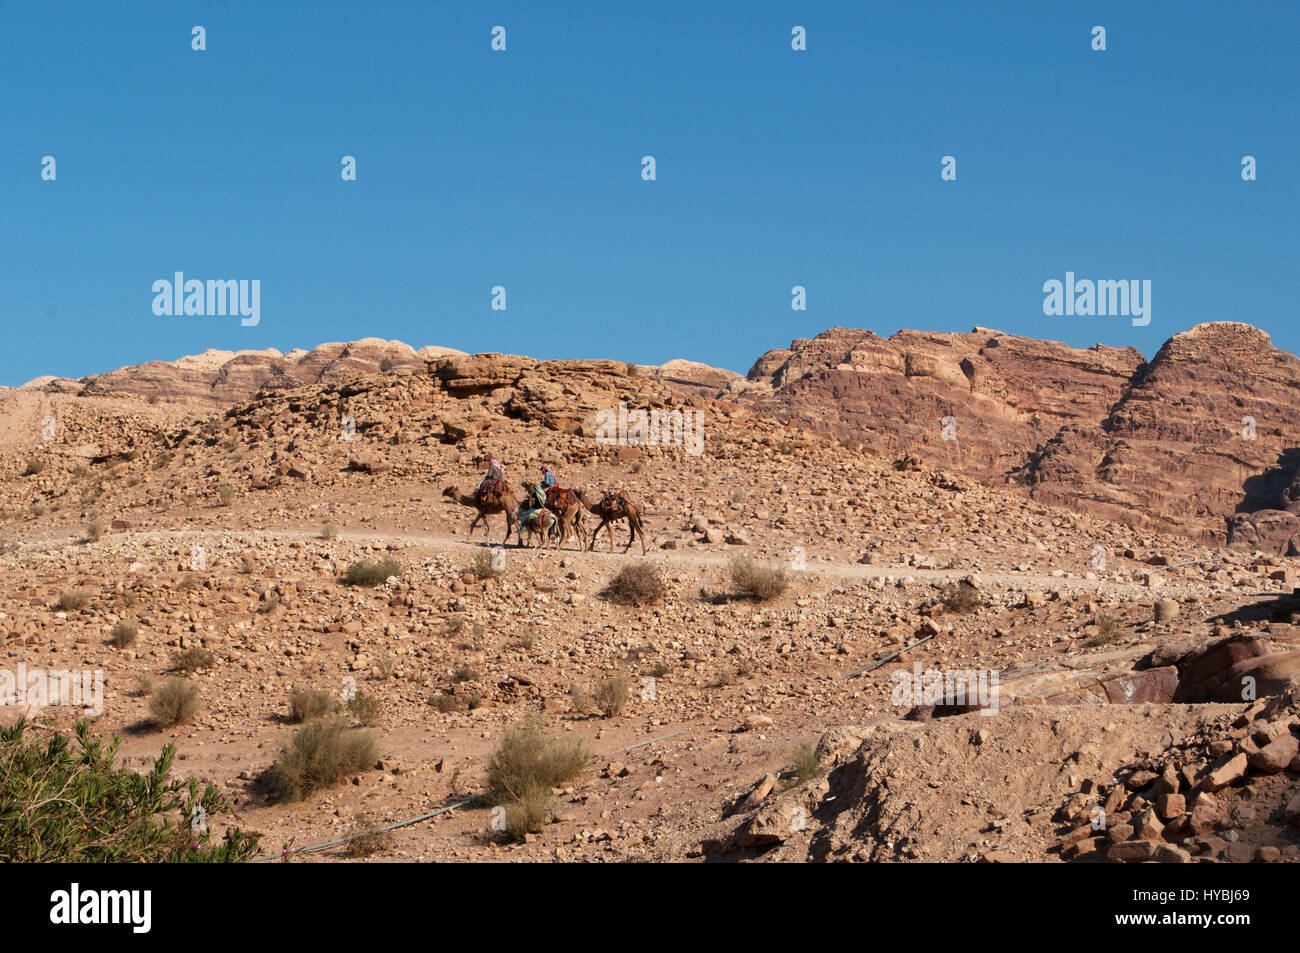 La Jordanie, Moyen-Orient : les bédouins et les chameaux dans le désert de la ville nabatéenne de Pétra archéologique Banque D'Images